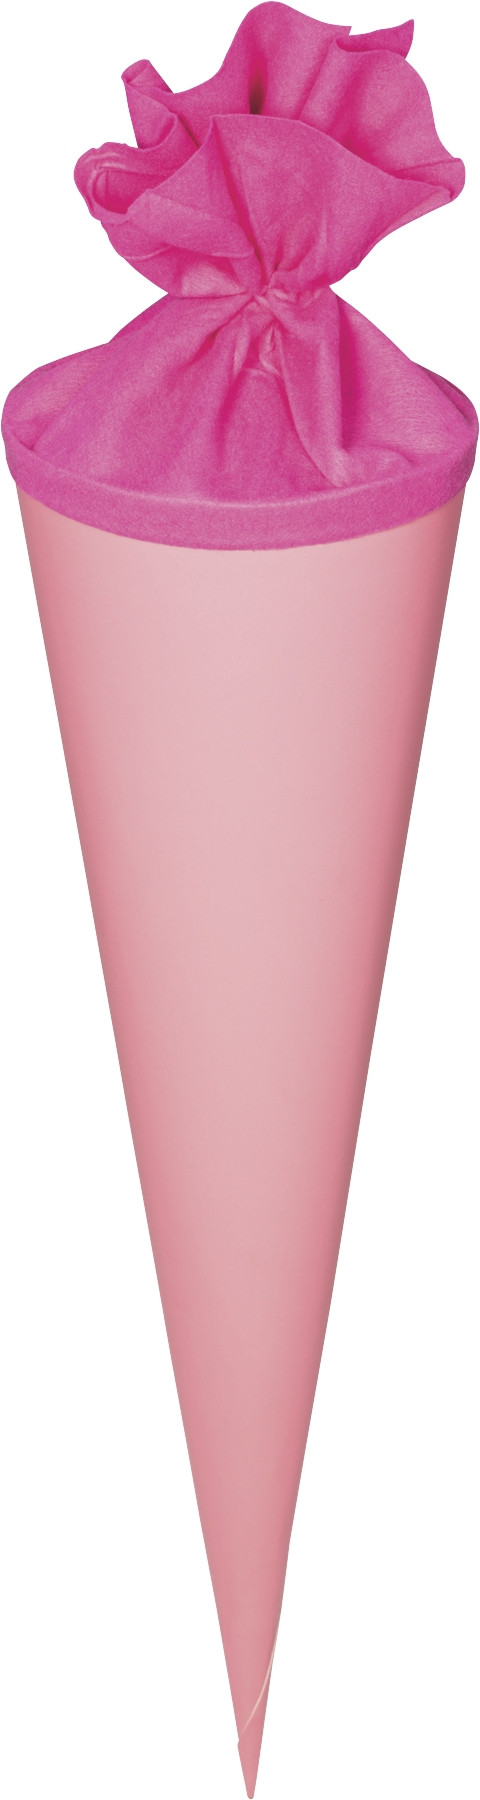 Schultüte Rohling rund groß pink mit Filzmanschette